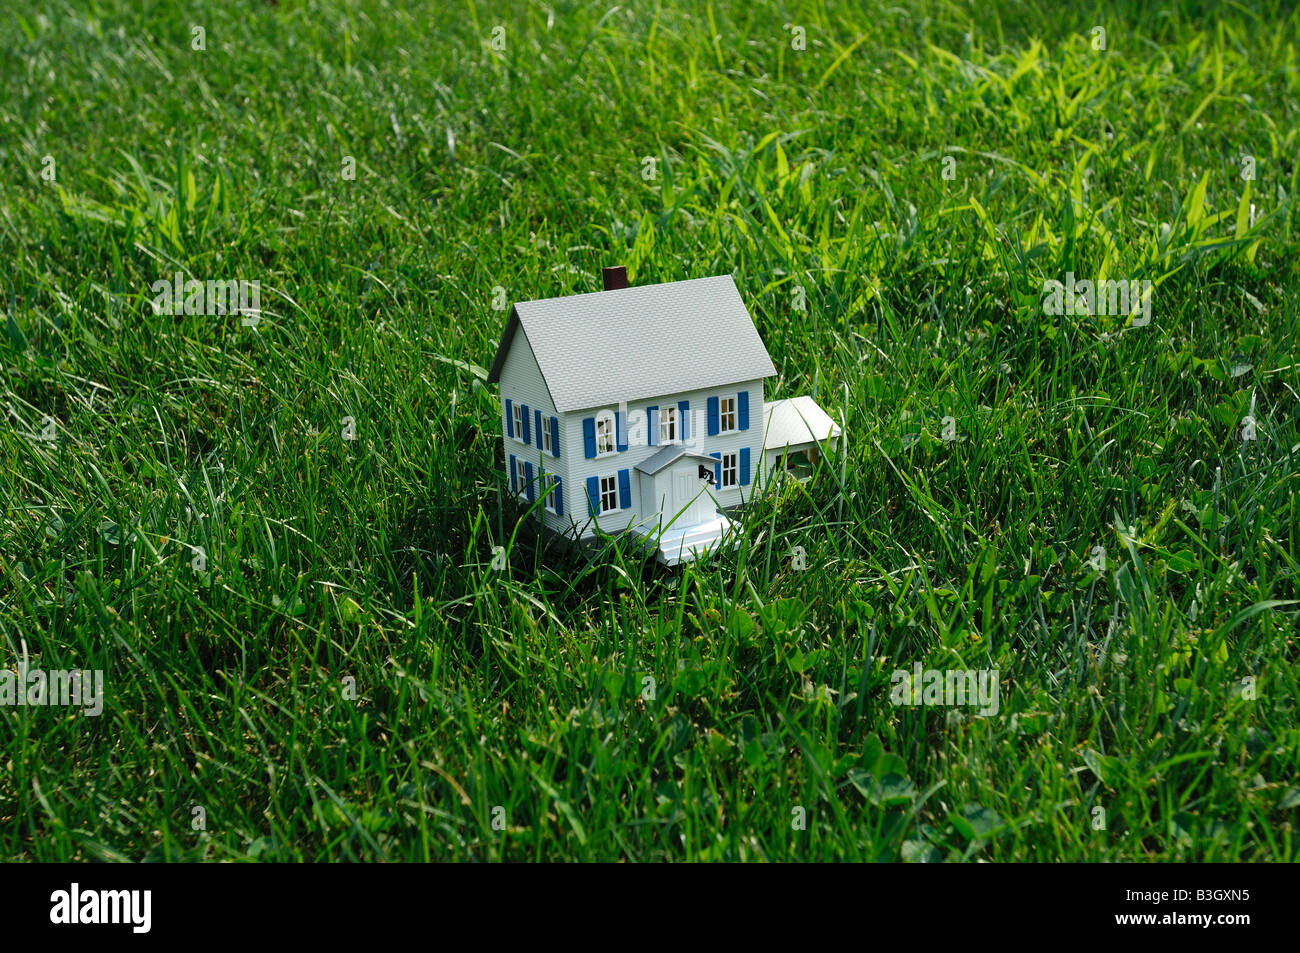 Kleines Modellhaus in Green grass ein kleines Plastikhaus in echten grünen Rasen Stockfoto